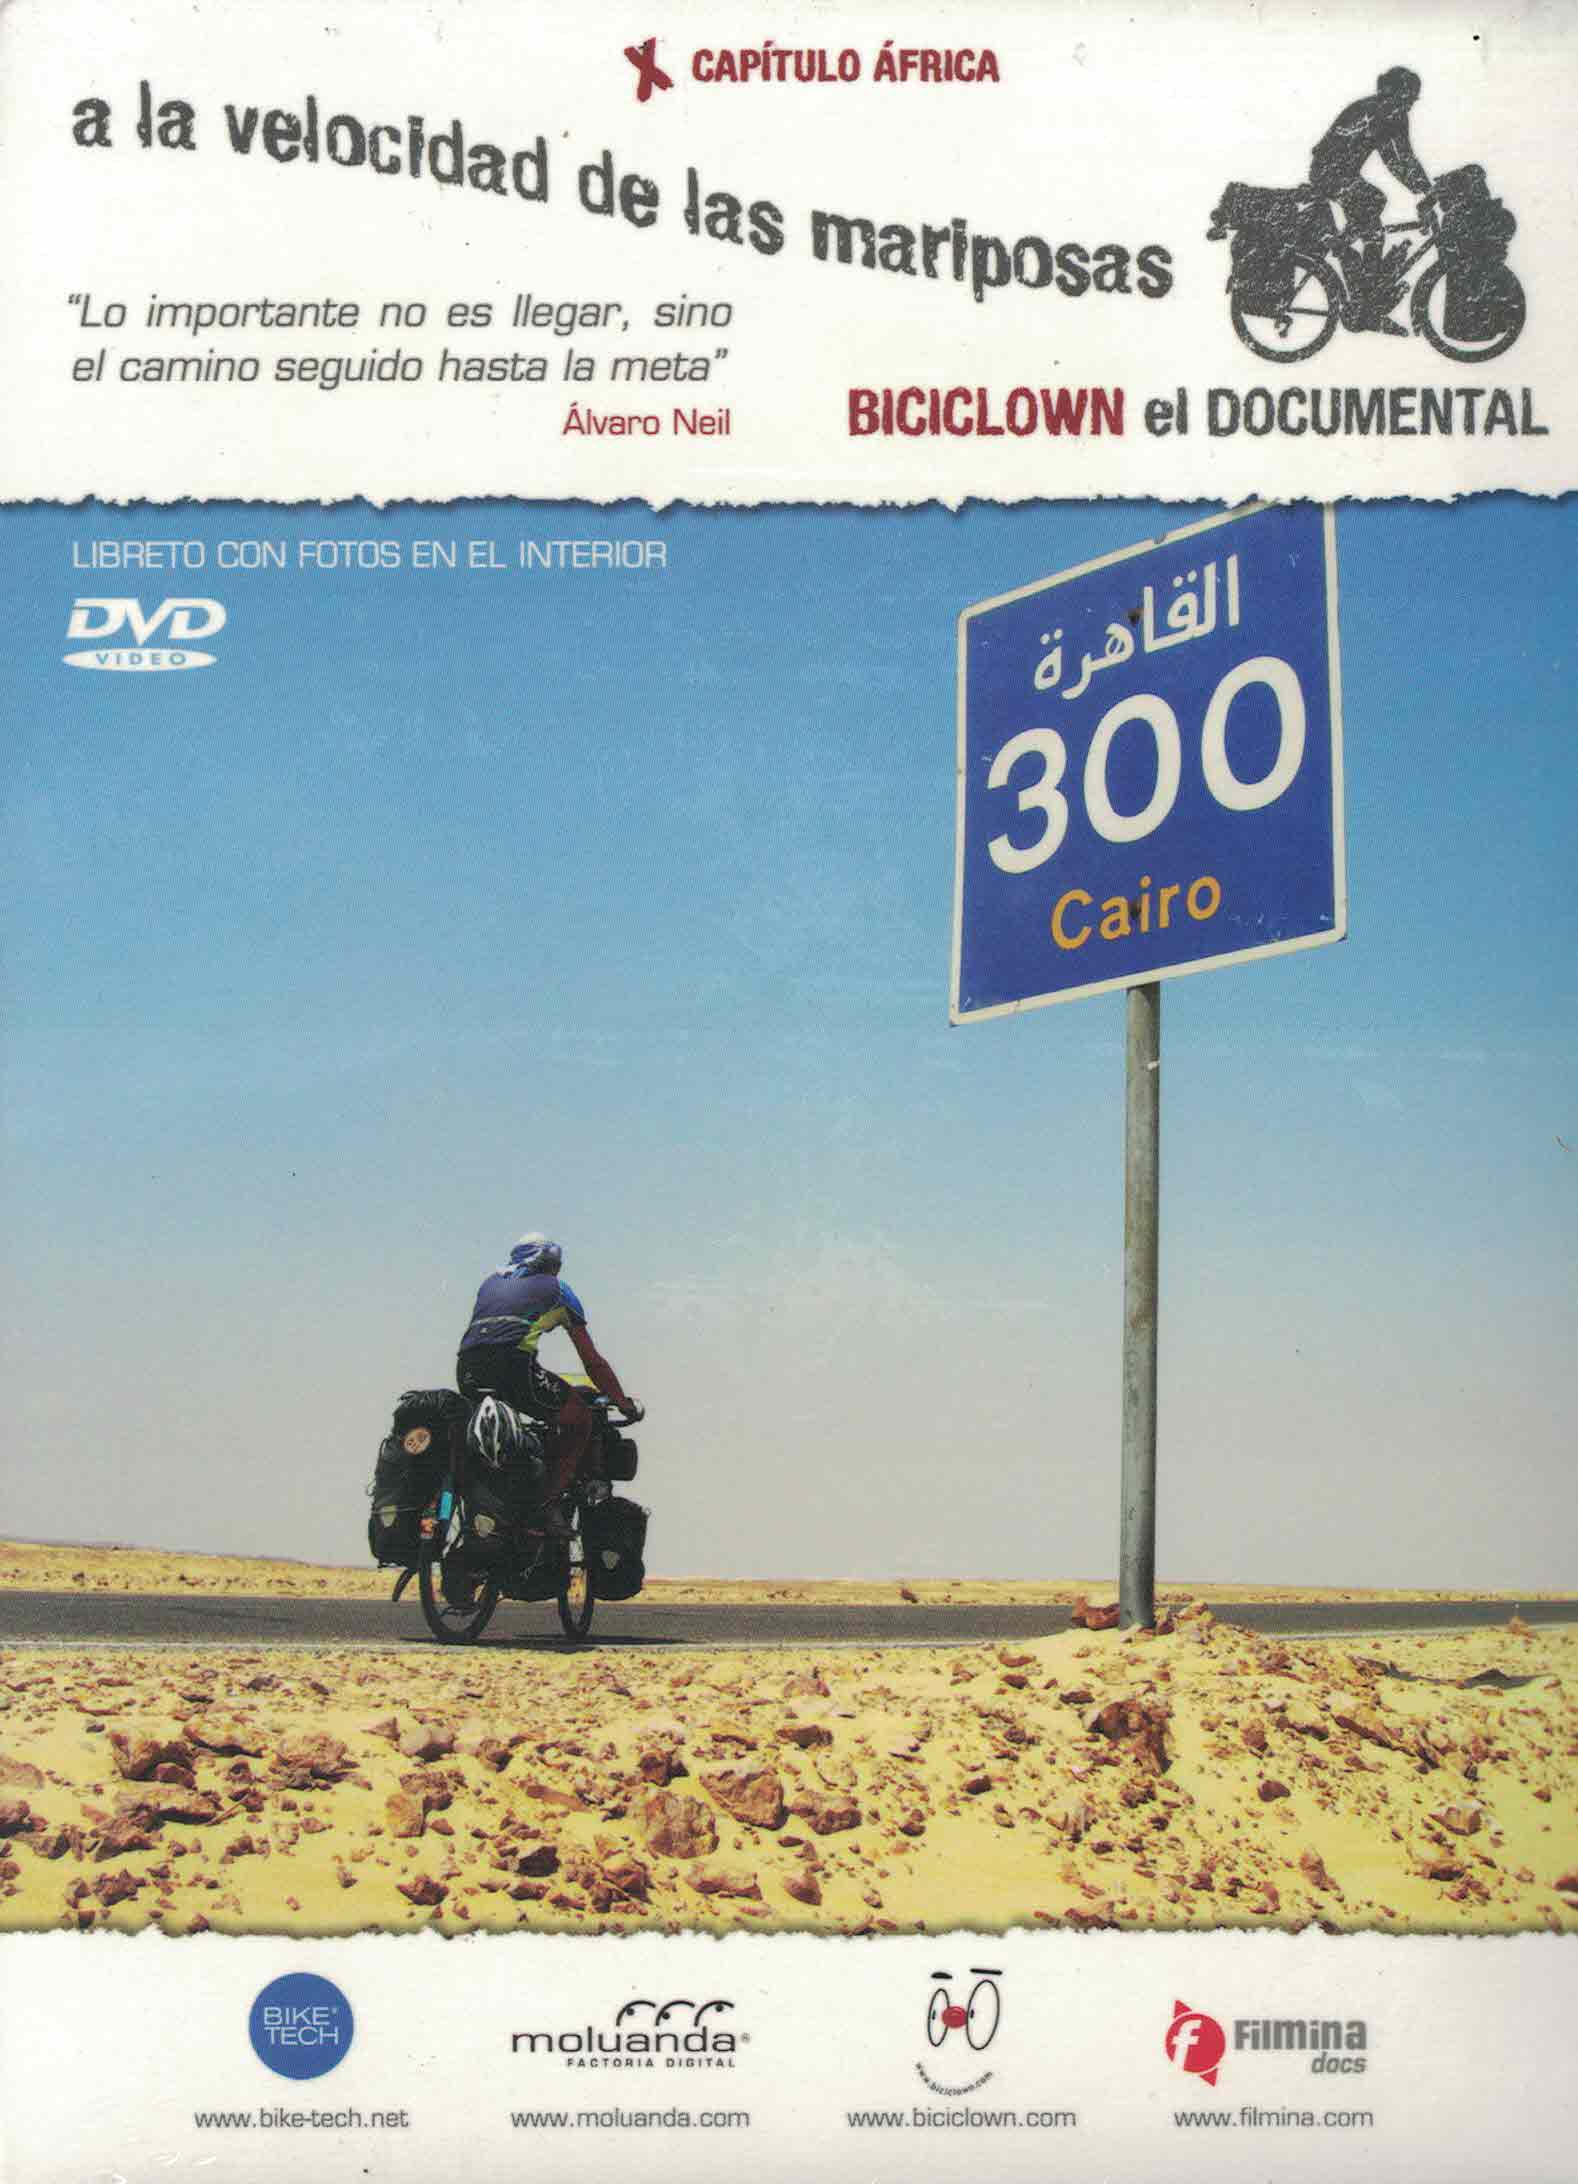 Biciclown el Documental. A la velocidad de las mariposas (DVD216)